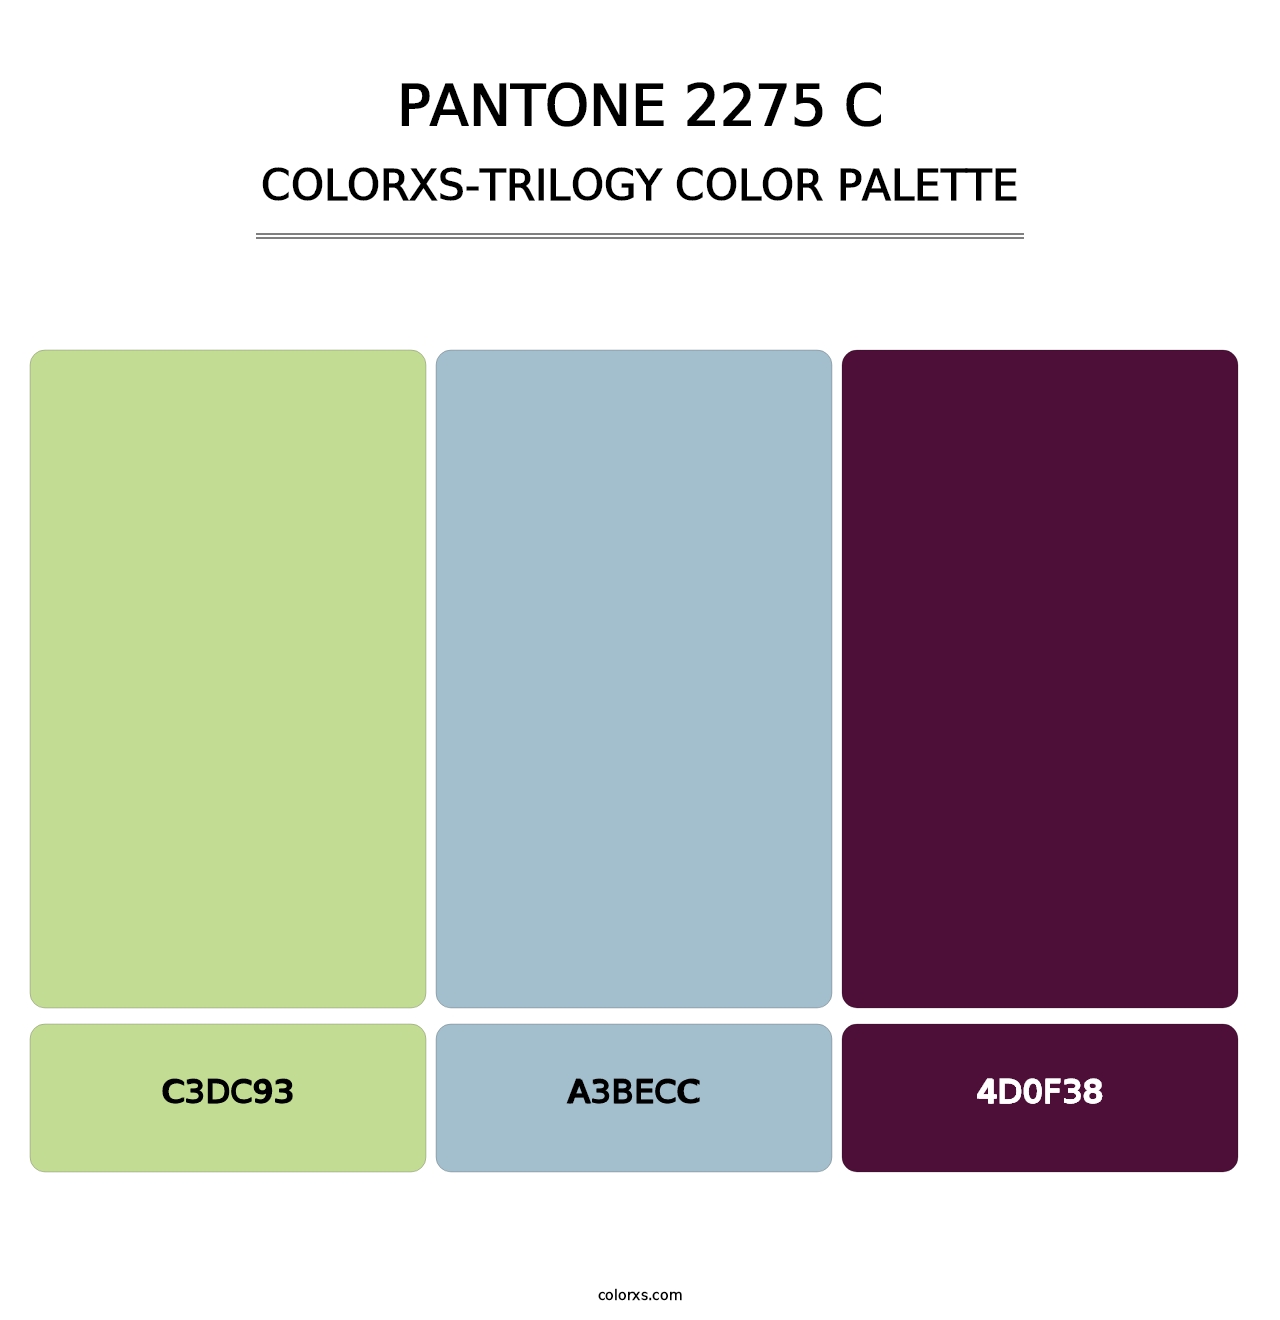 PANTONE 2275 C - Colorxs Trilogy Palette